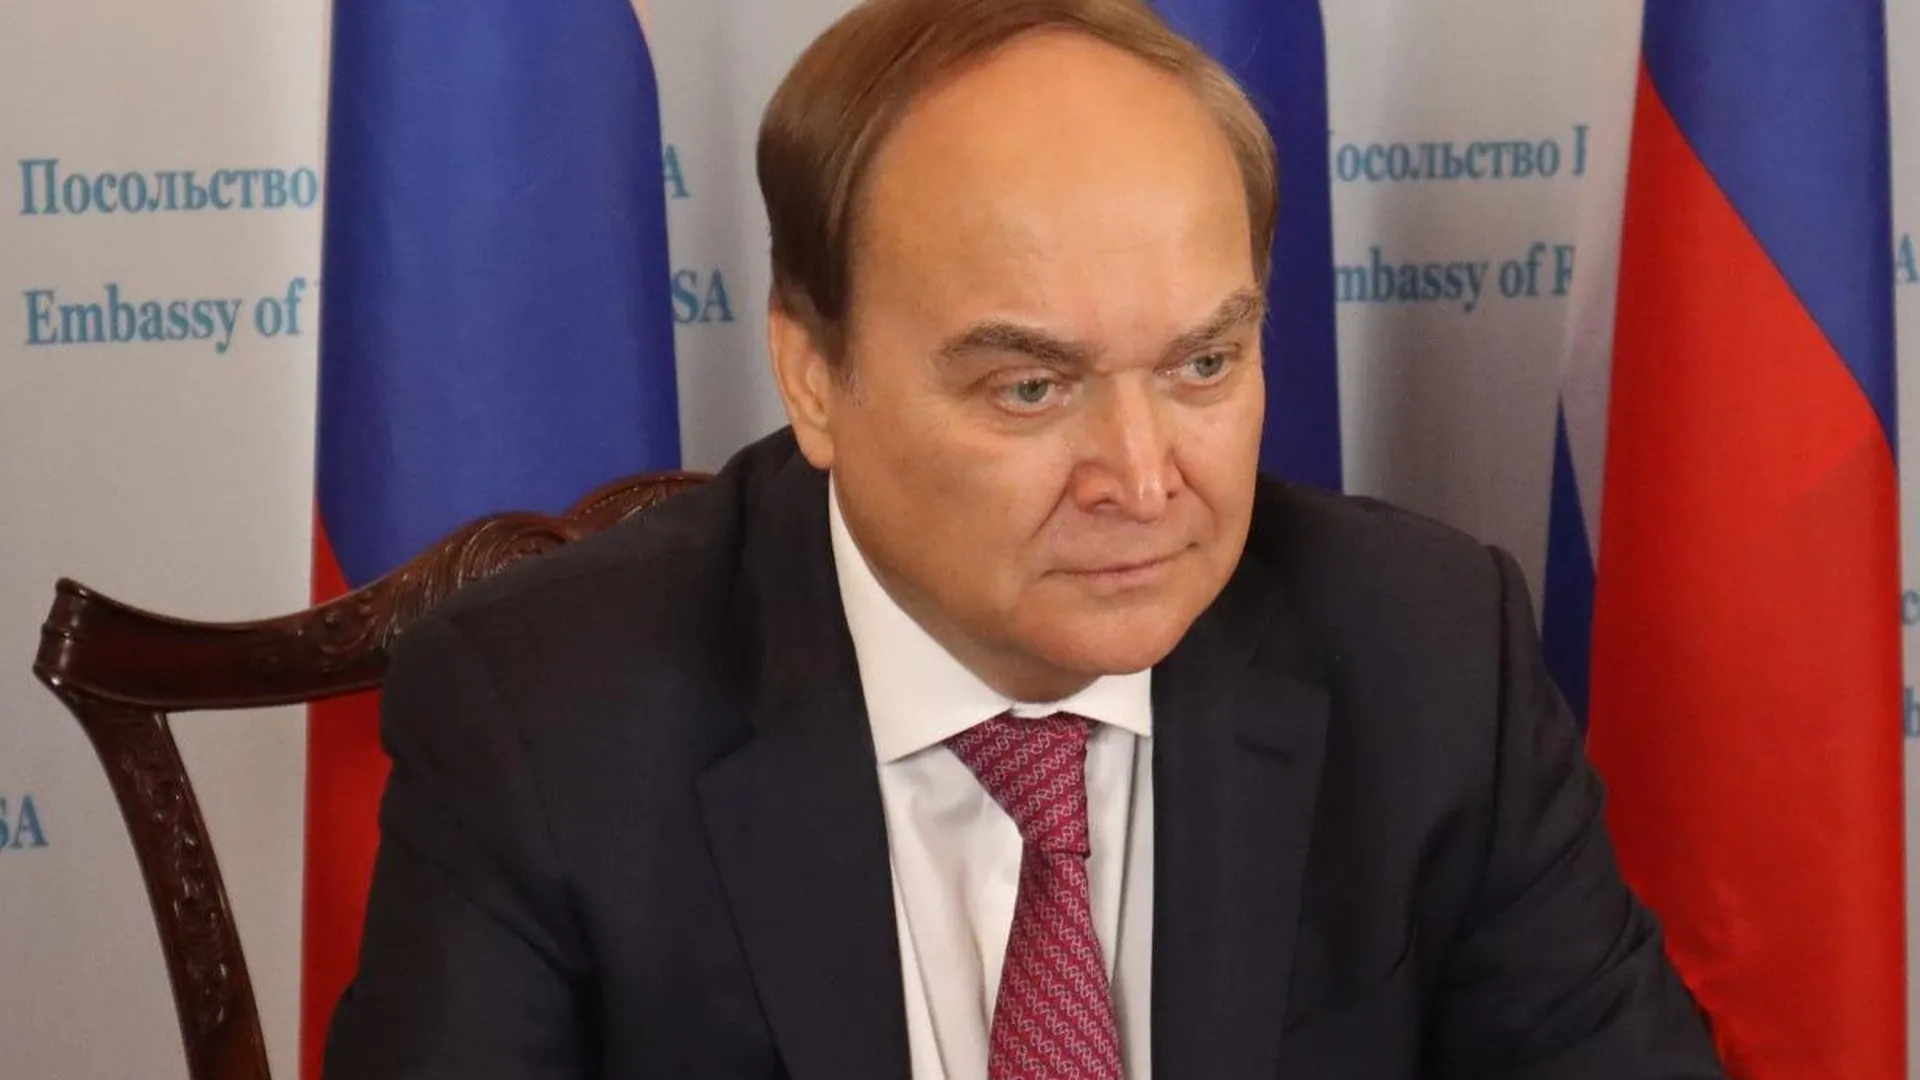 Посол Антонов: Запад растоптал азы дипломатии